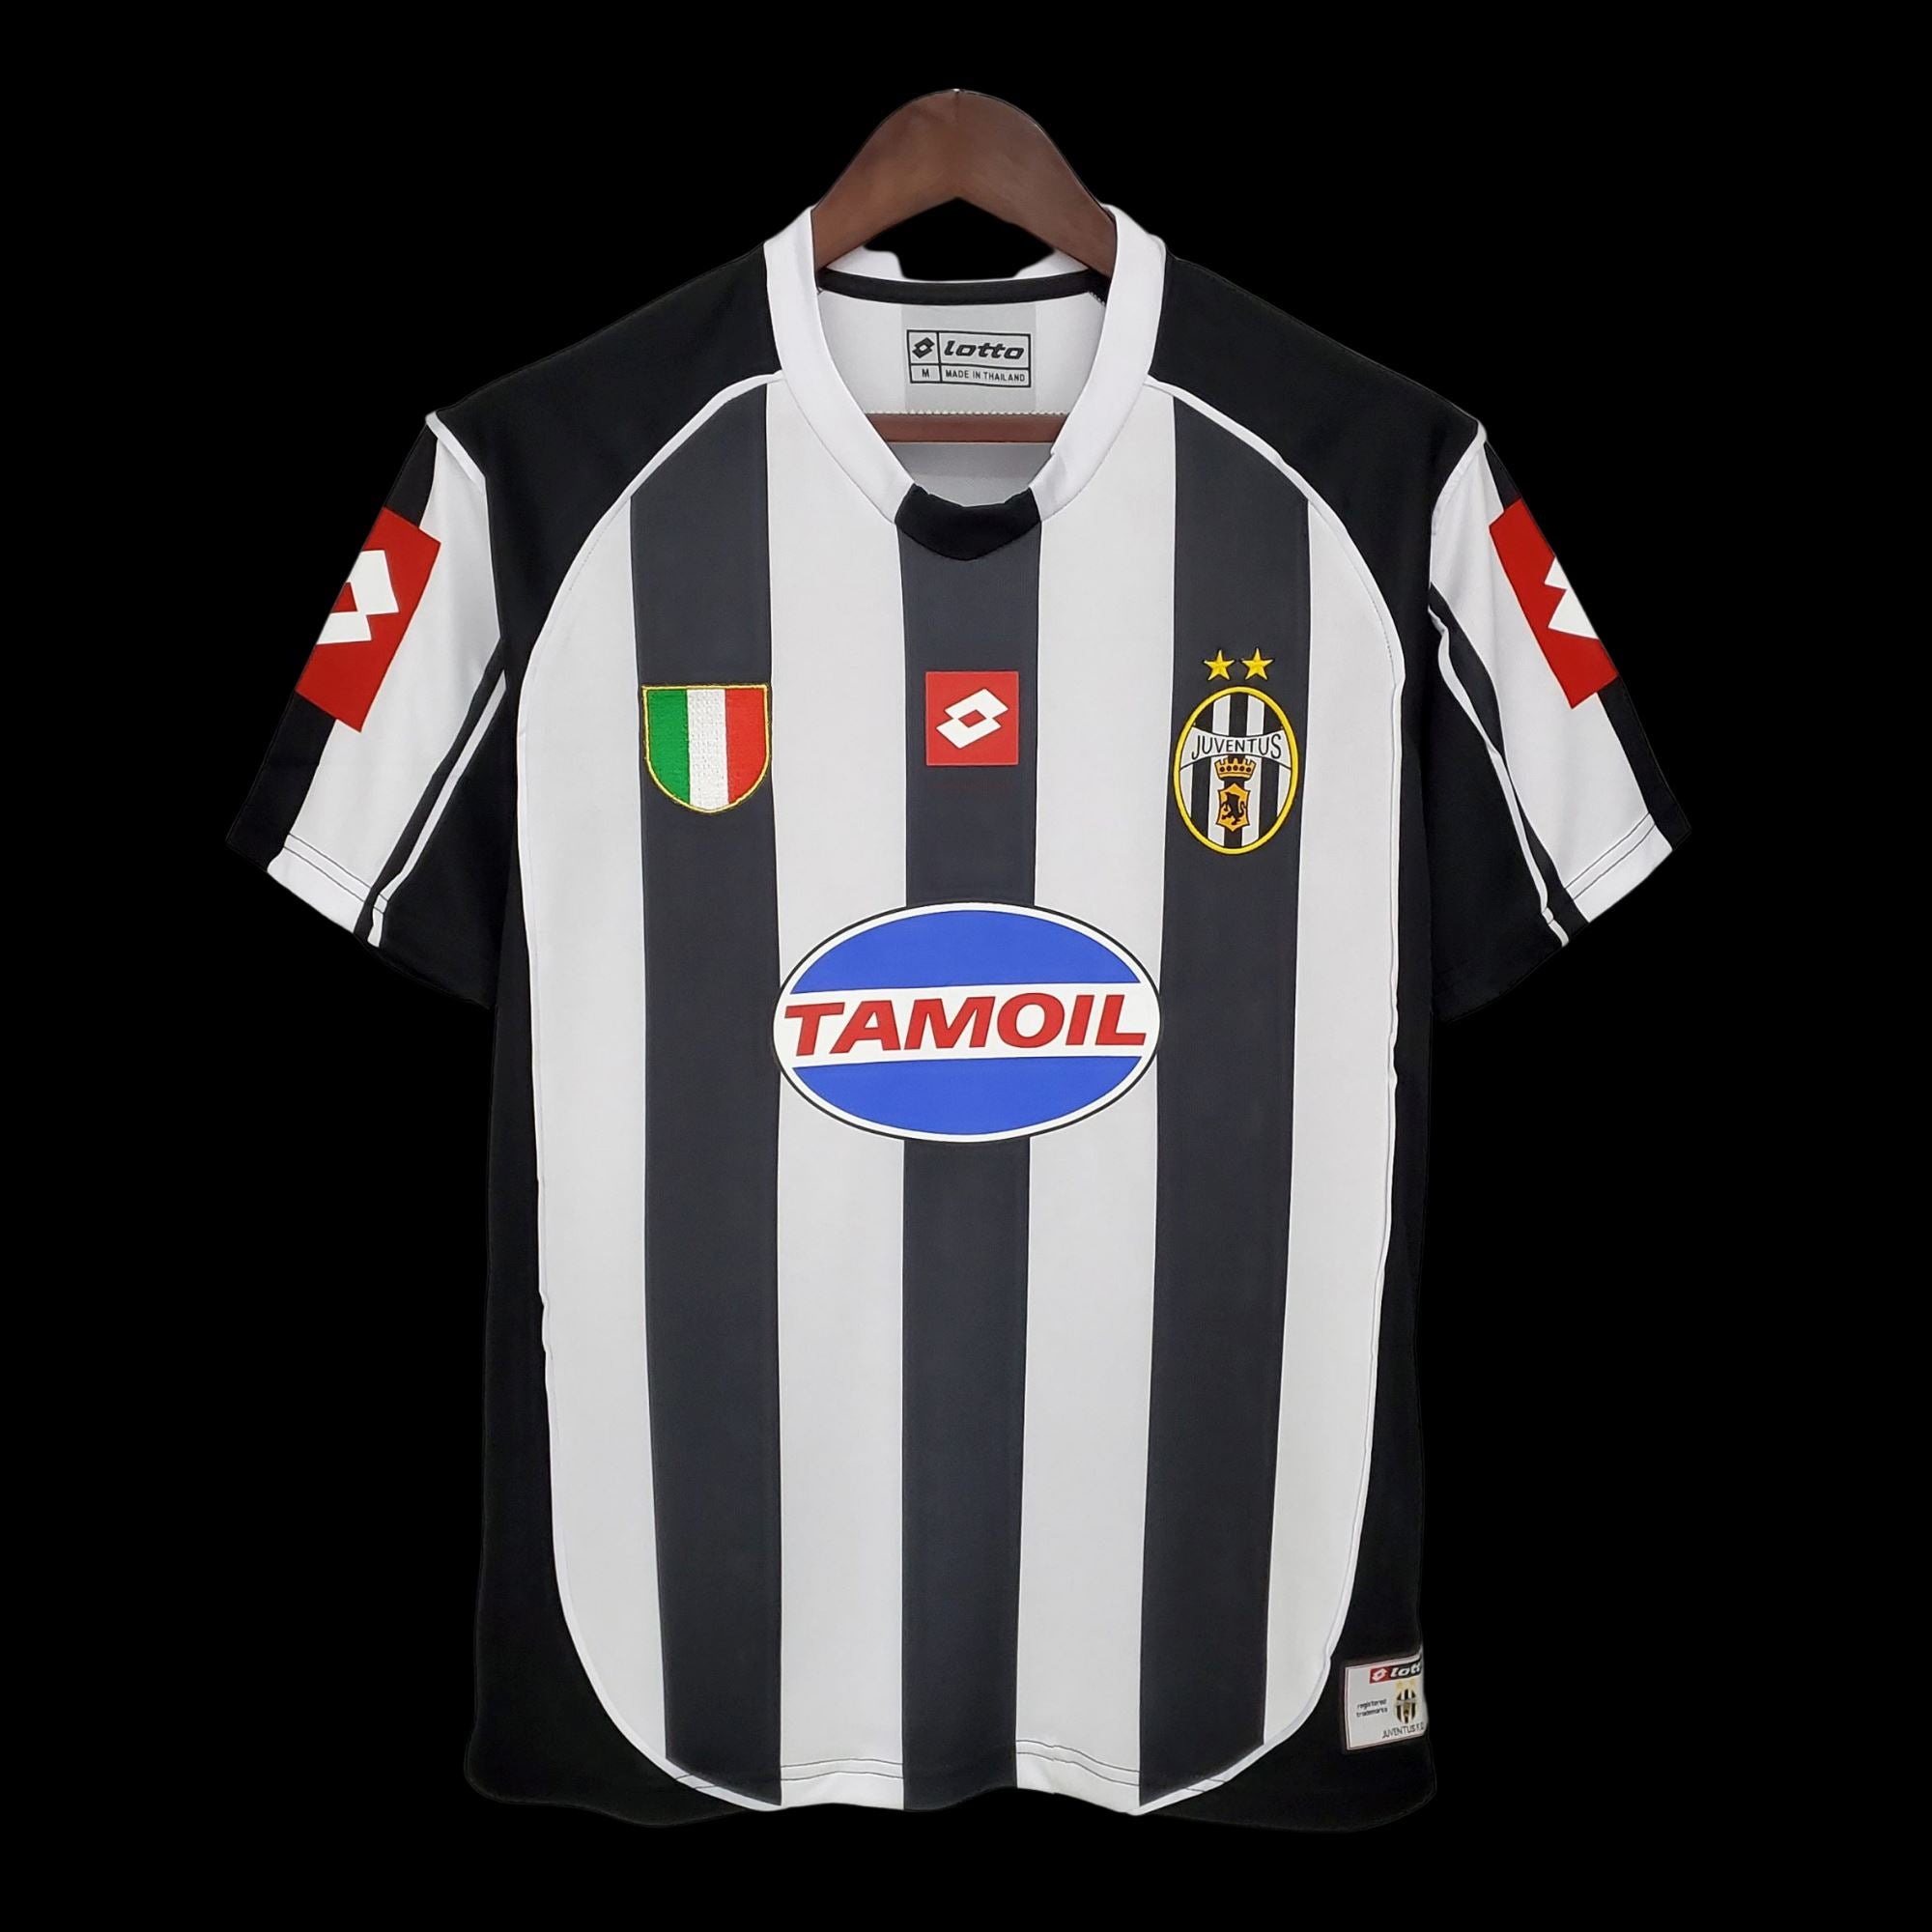 2002/03 Juventus Home Jersey - ITASPORT